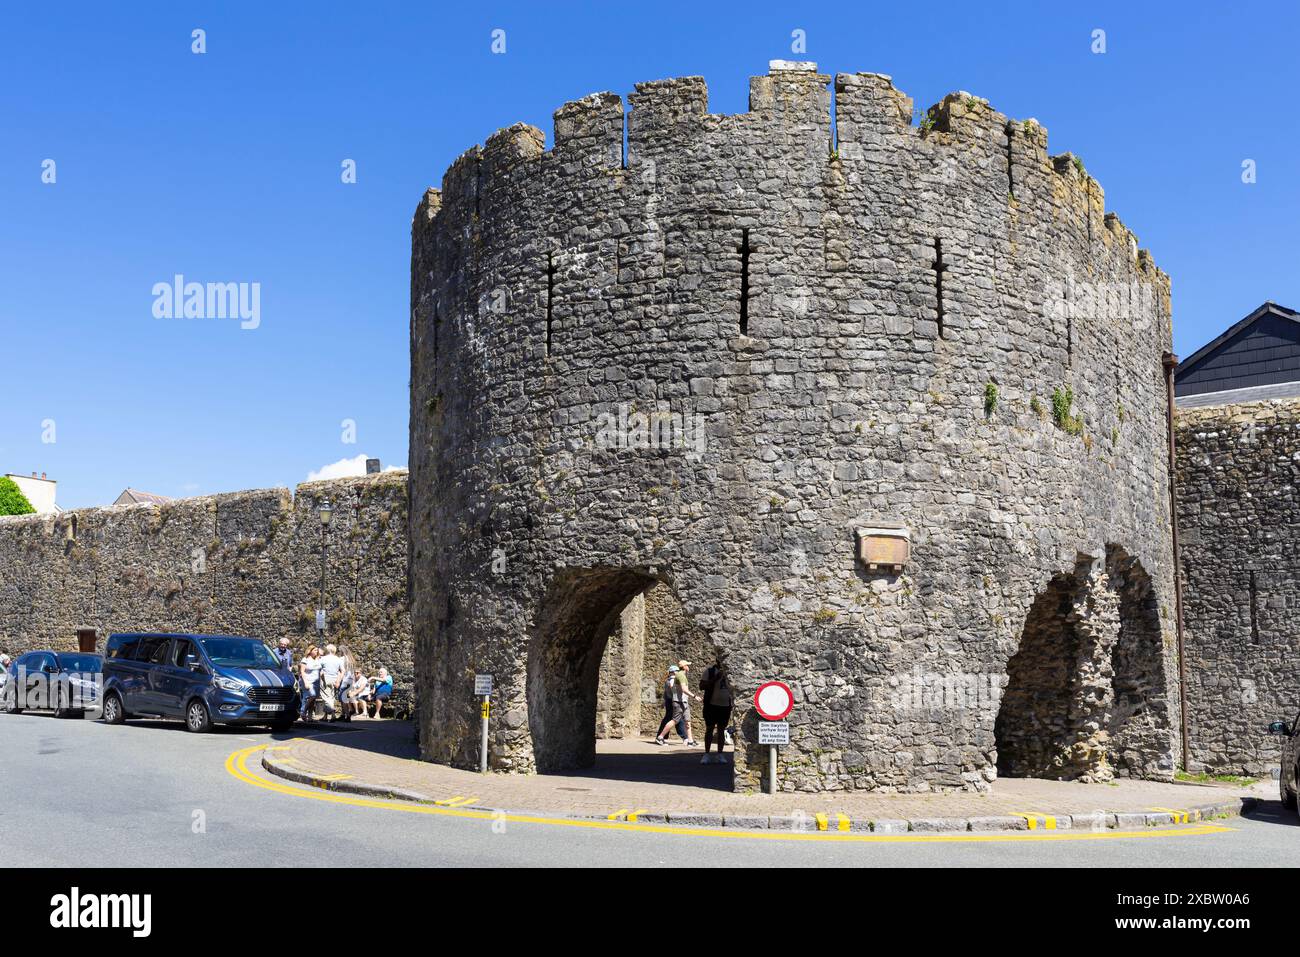 Tenby Town Five Arches Gate ein Eingangstor in der mittelalterlichen Stadtmauer des 13. Jahrhunderts Tenby Carmarthan Bucht Pembrokeshire West Wales UK GB Europe Stockfoto